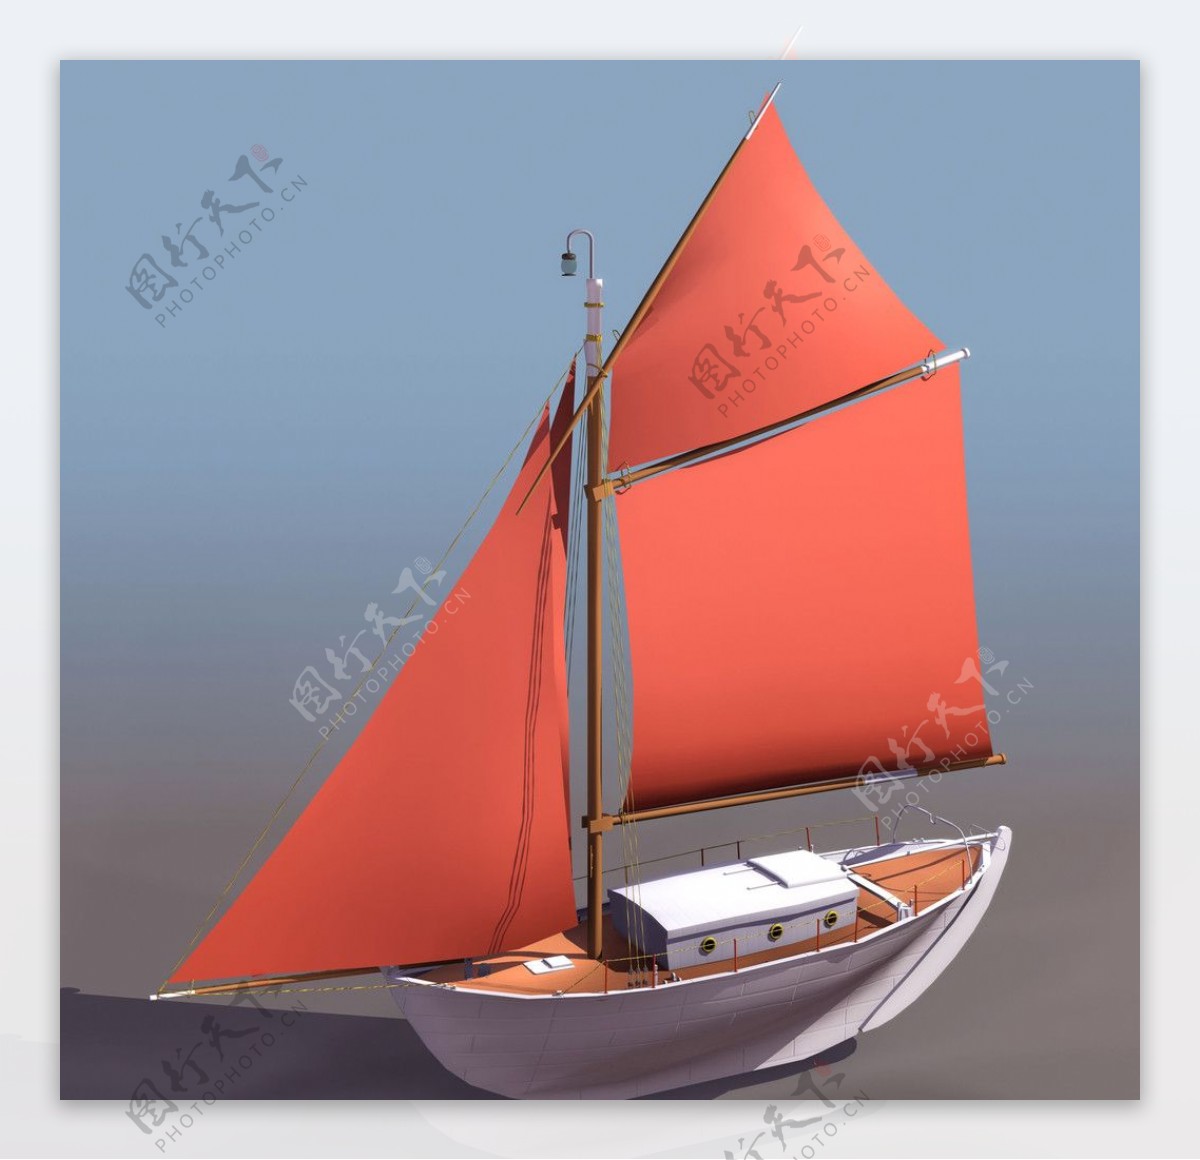 3D小型帆船模型图片